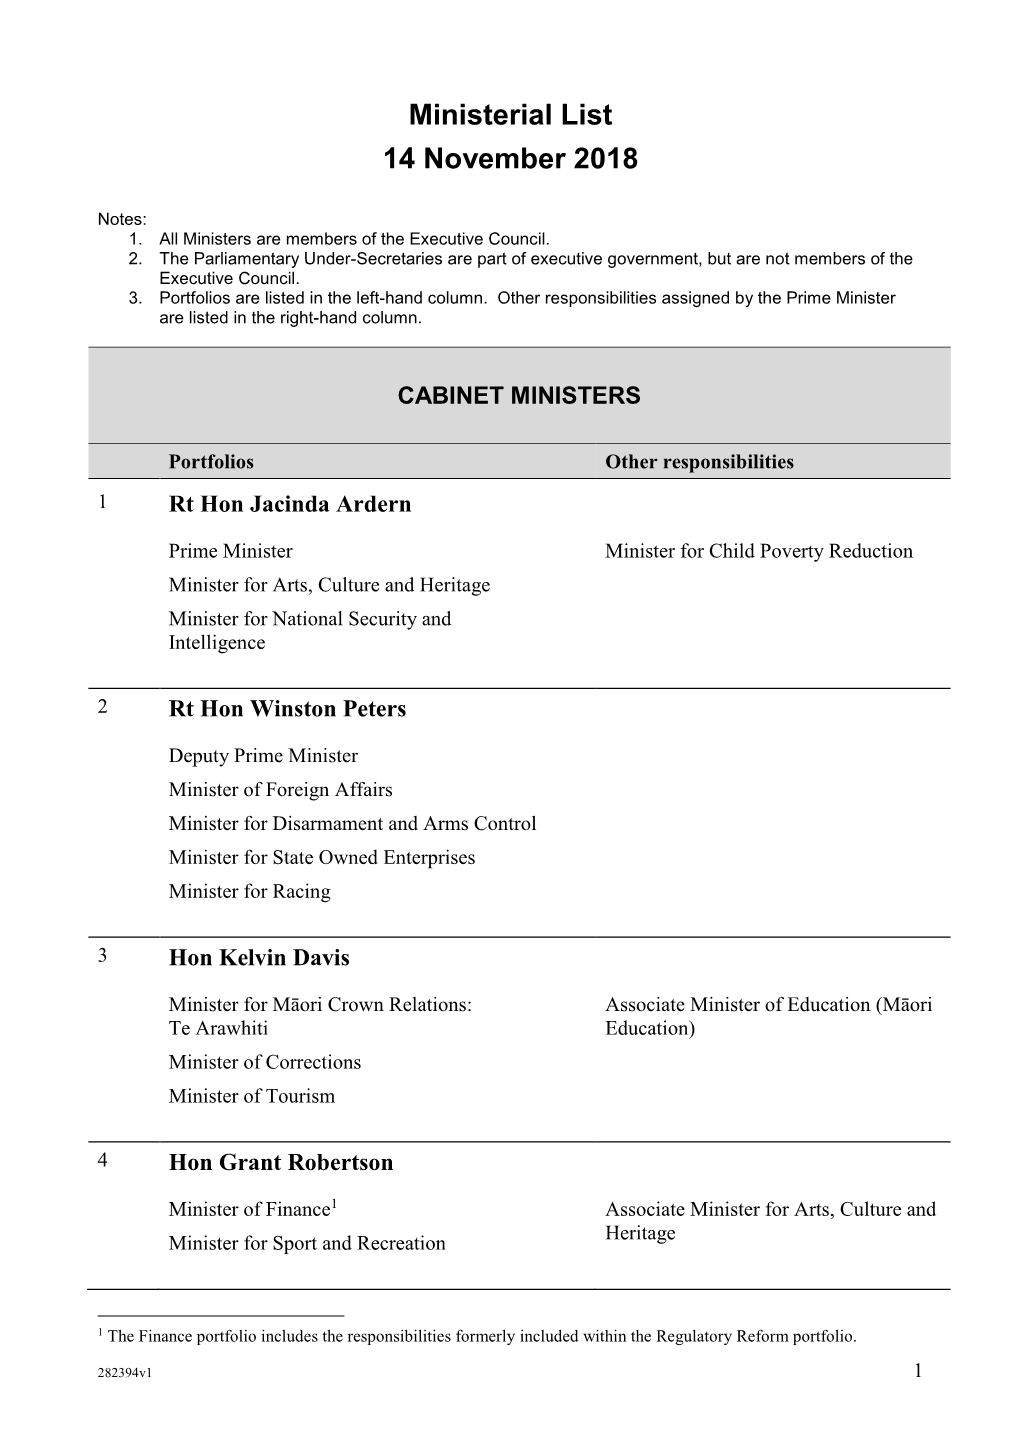 Ministerial List 14 November 2018